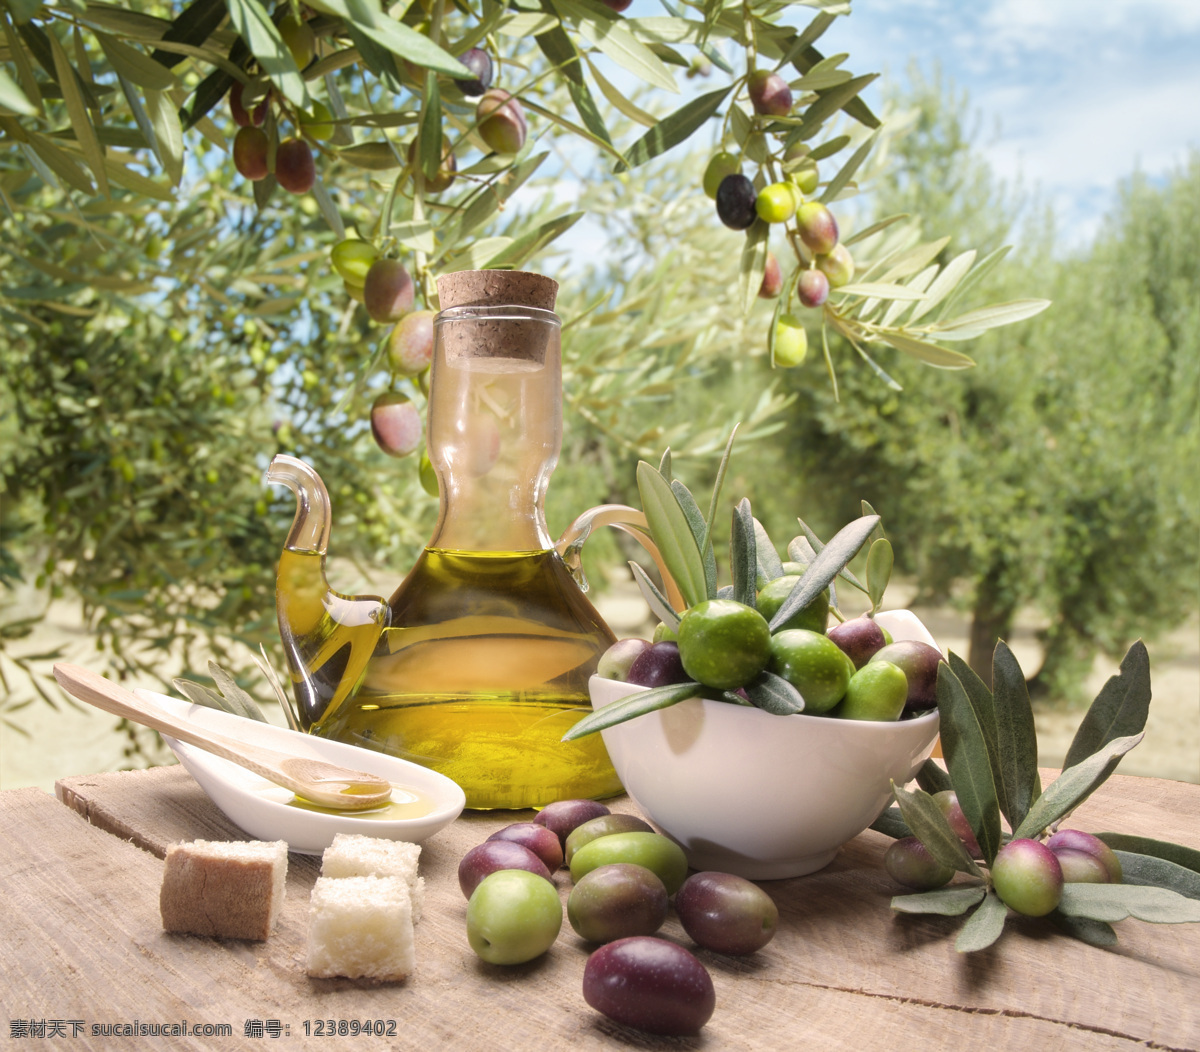 橄榄 橄榄果 橄榄叶 橄榄油 橄榄枝 生物世界 蔬菜 橄榄果实 风景 生活 旅游餐饮